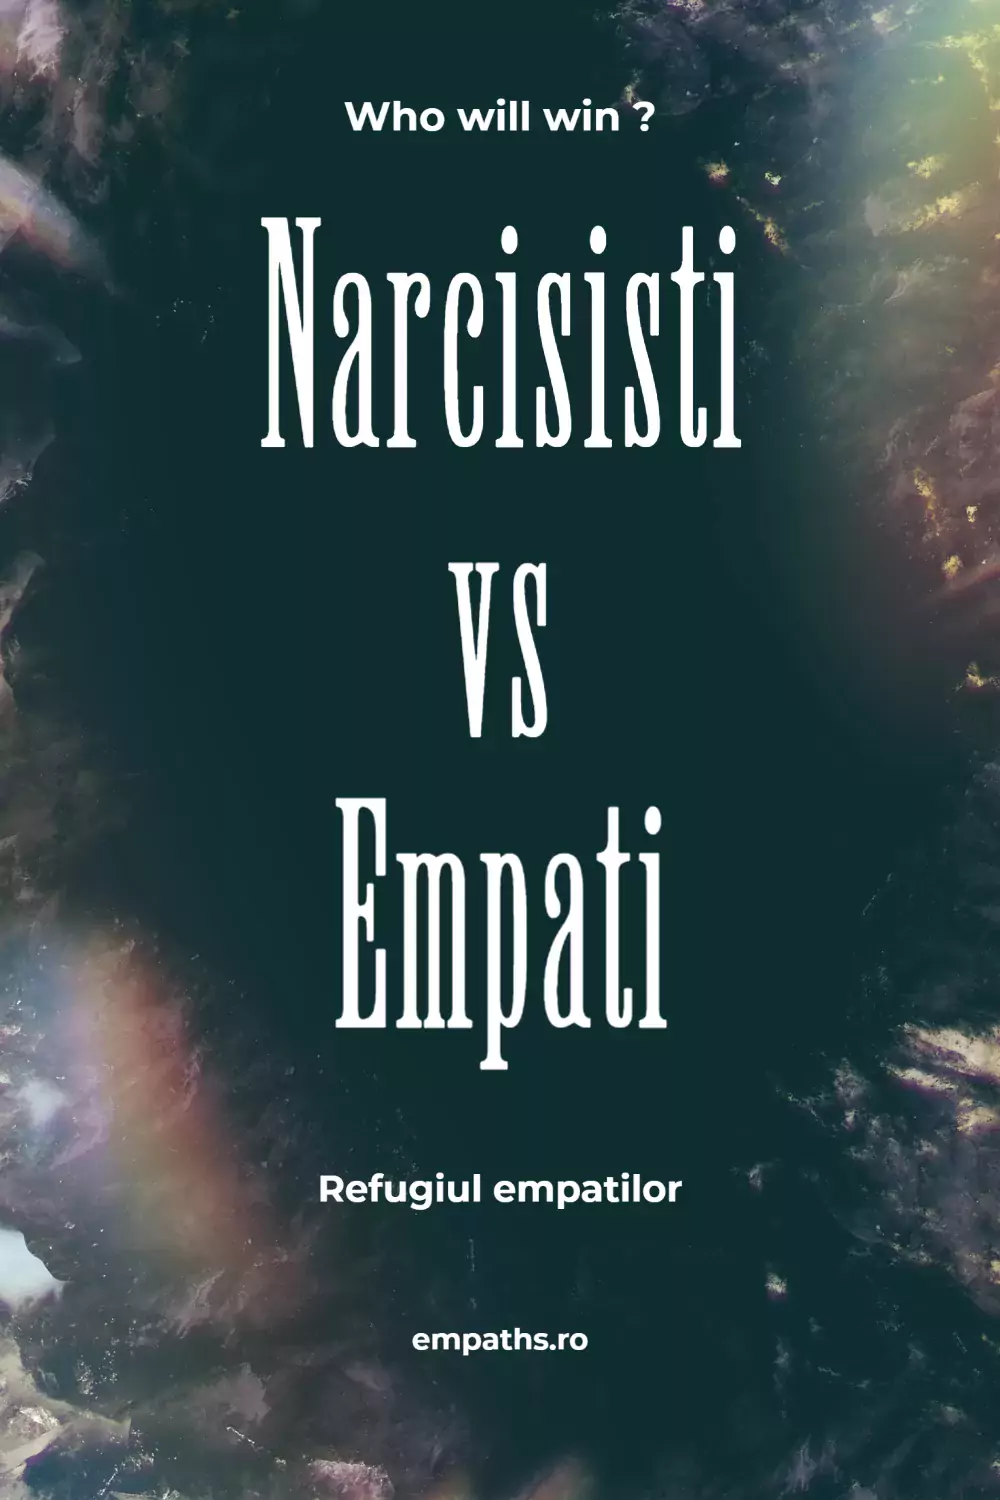 empat vs narcisist